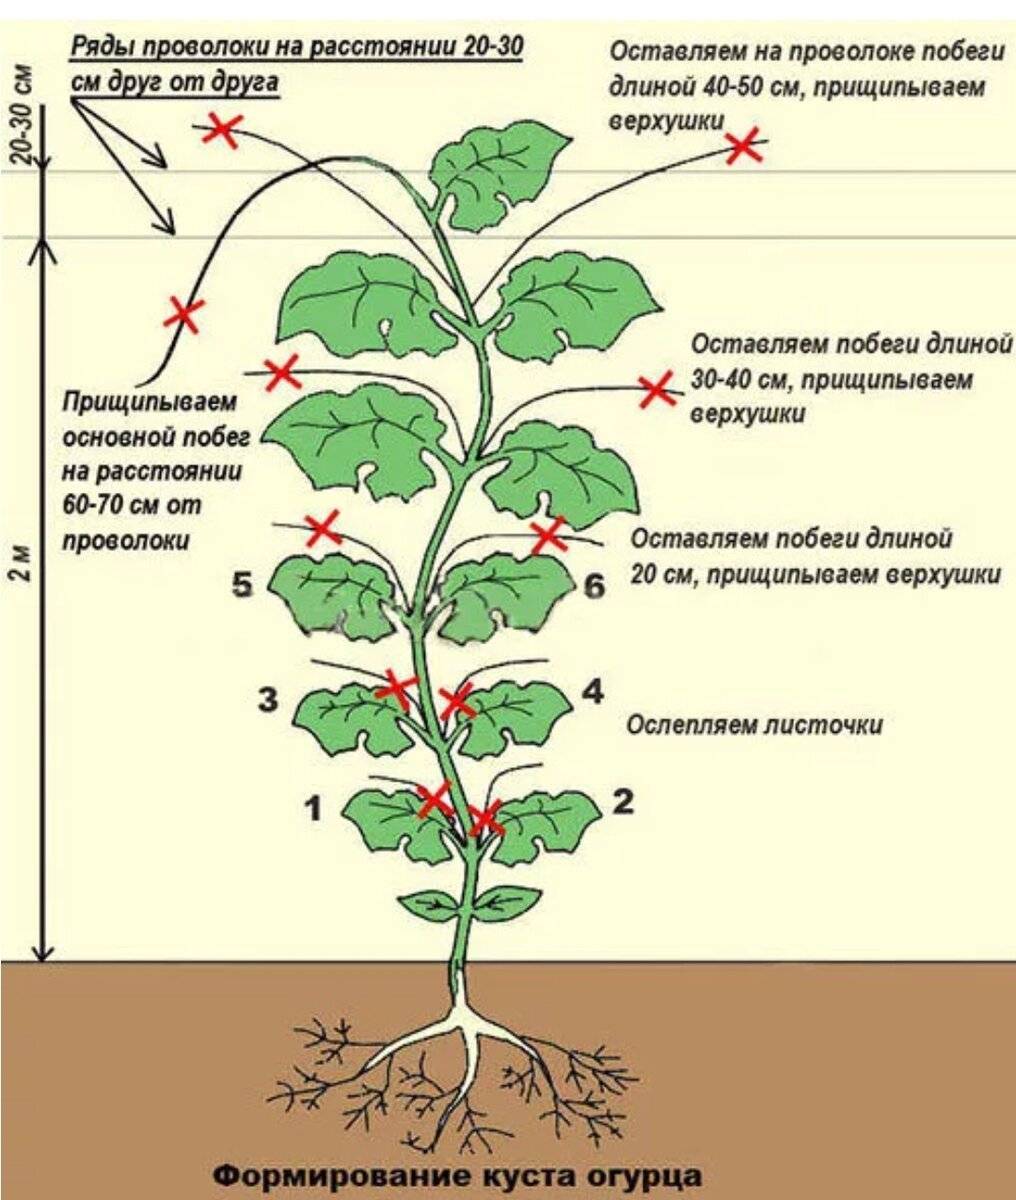 Что такое прищипывание растений и как прищипывать растения